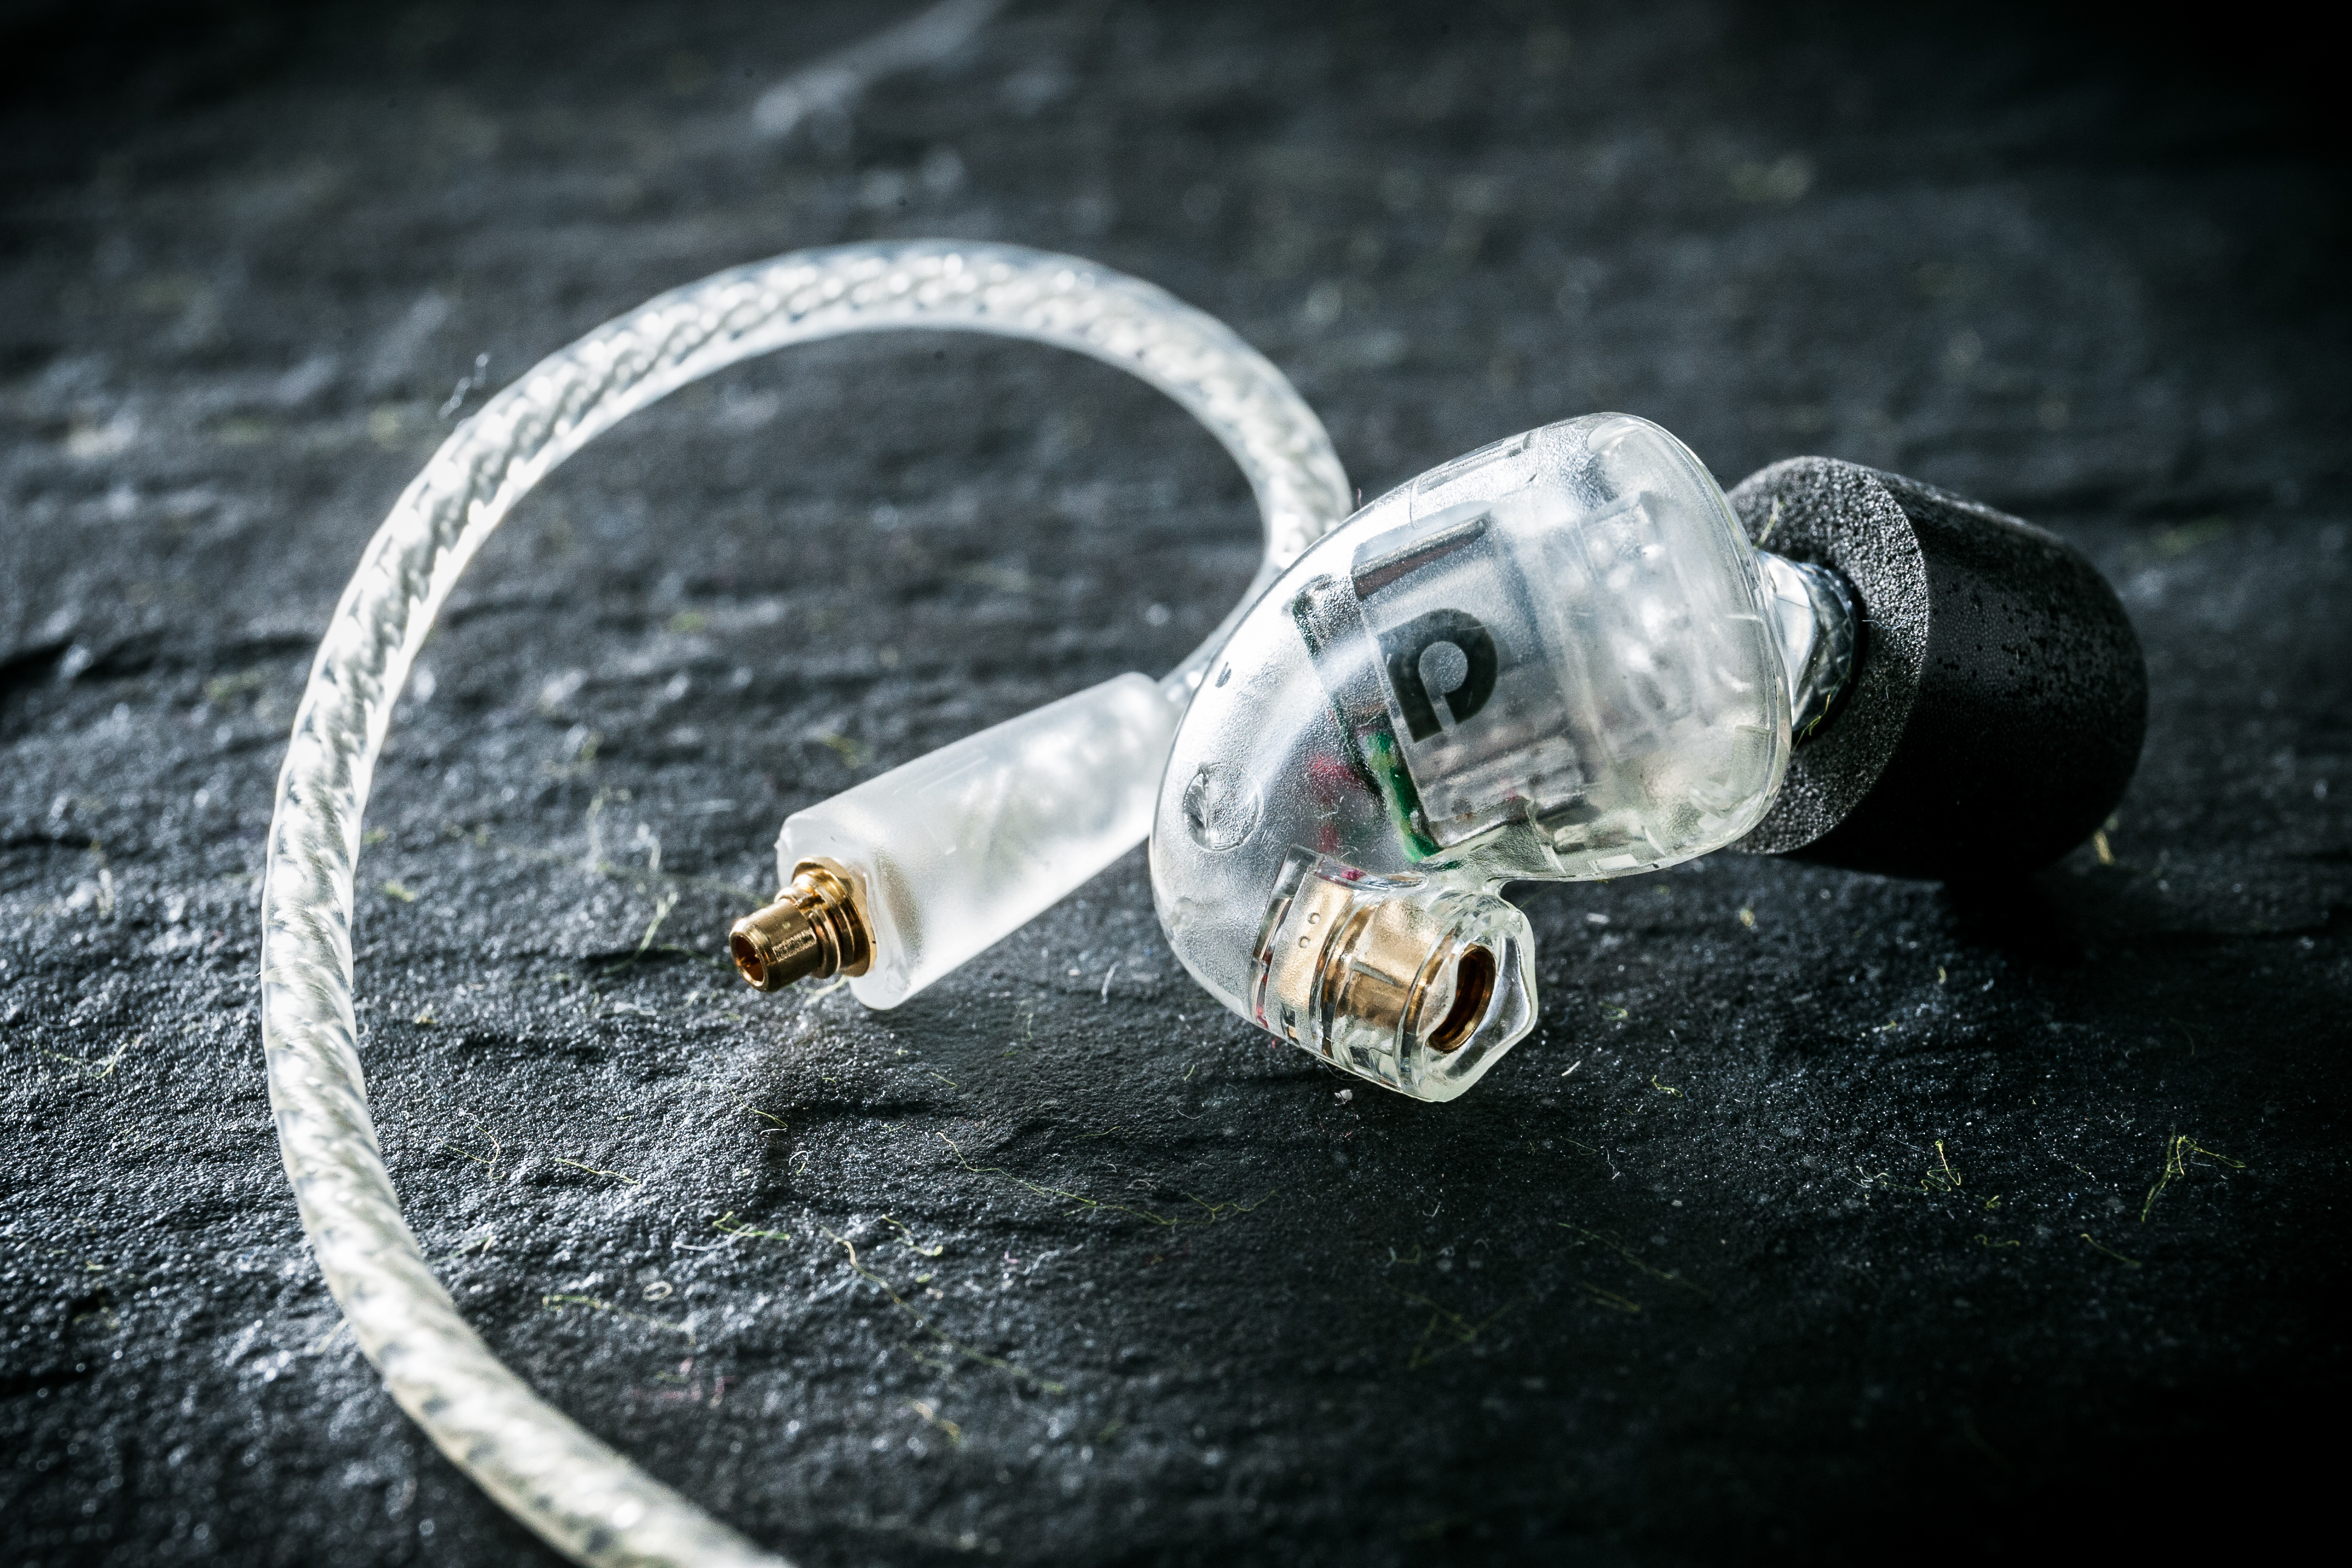 澳洲耳機品牌 Audiofly 雖則名氣不大，但旗下耳機產品向來以高質素見稱，在 Head-Fi 界早已有不少支持者。今次評測的是旗艦之作 AF1120，與之前 AF180 相比，每邊的動鐵單元由 4 個增至 6 個，音質能否大幅提升呢？單元更多會否變得難推呢？